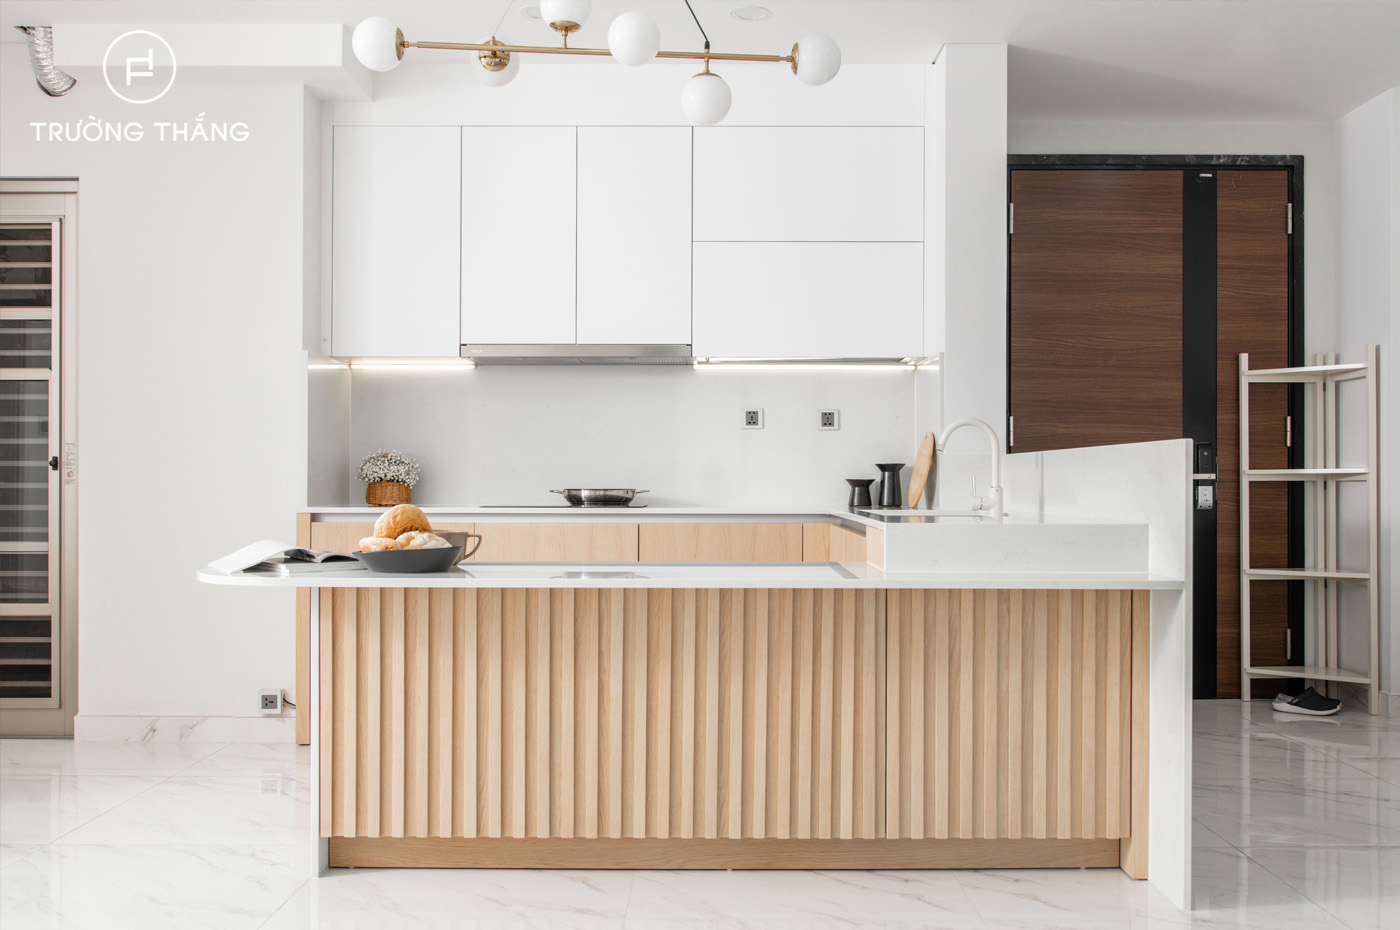 Tủ bếp Studio tại căn hộ Midtown sử dụng màu sắc tự nhiên, thiết kế tối giản